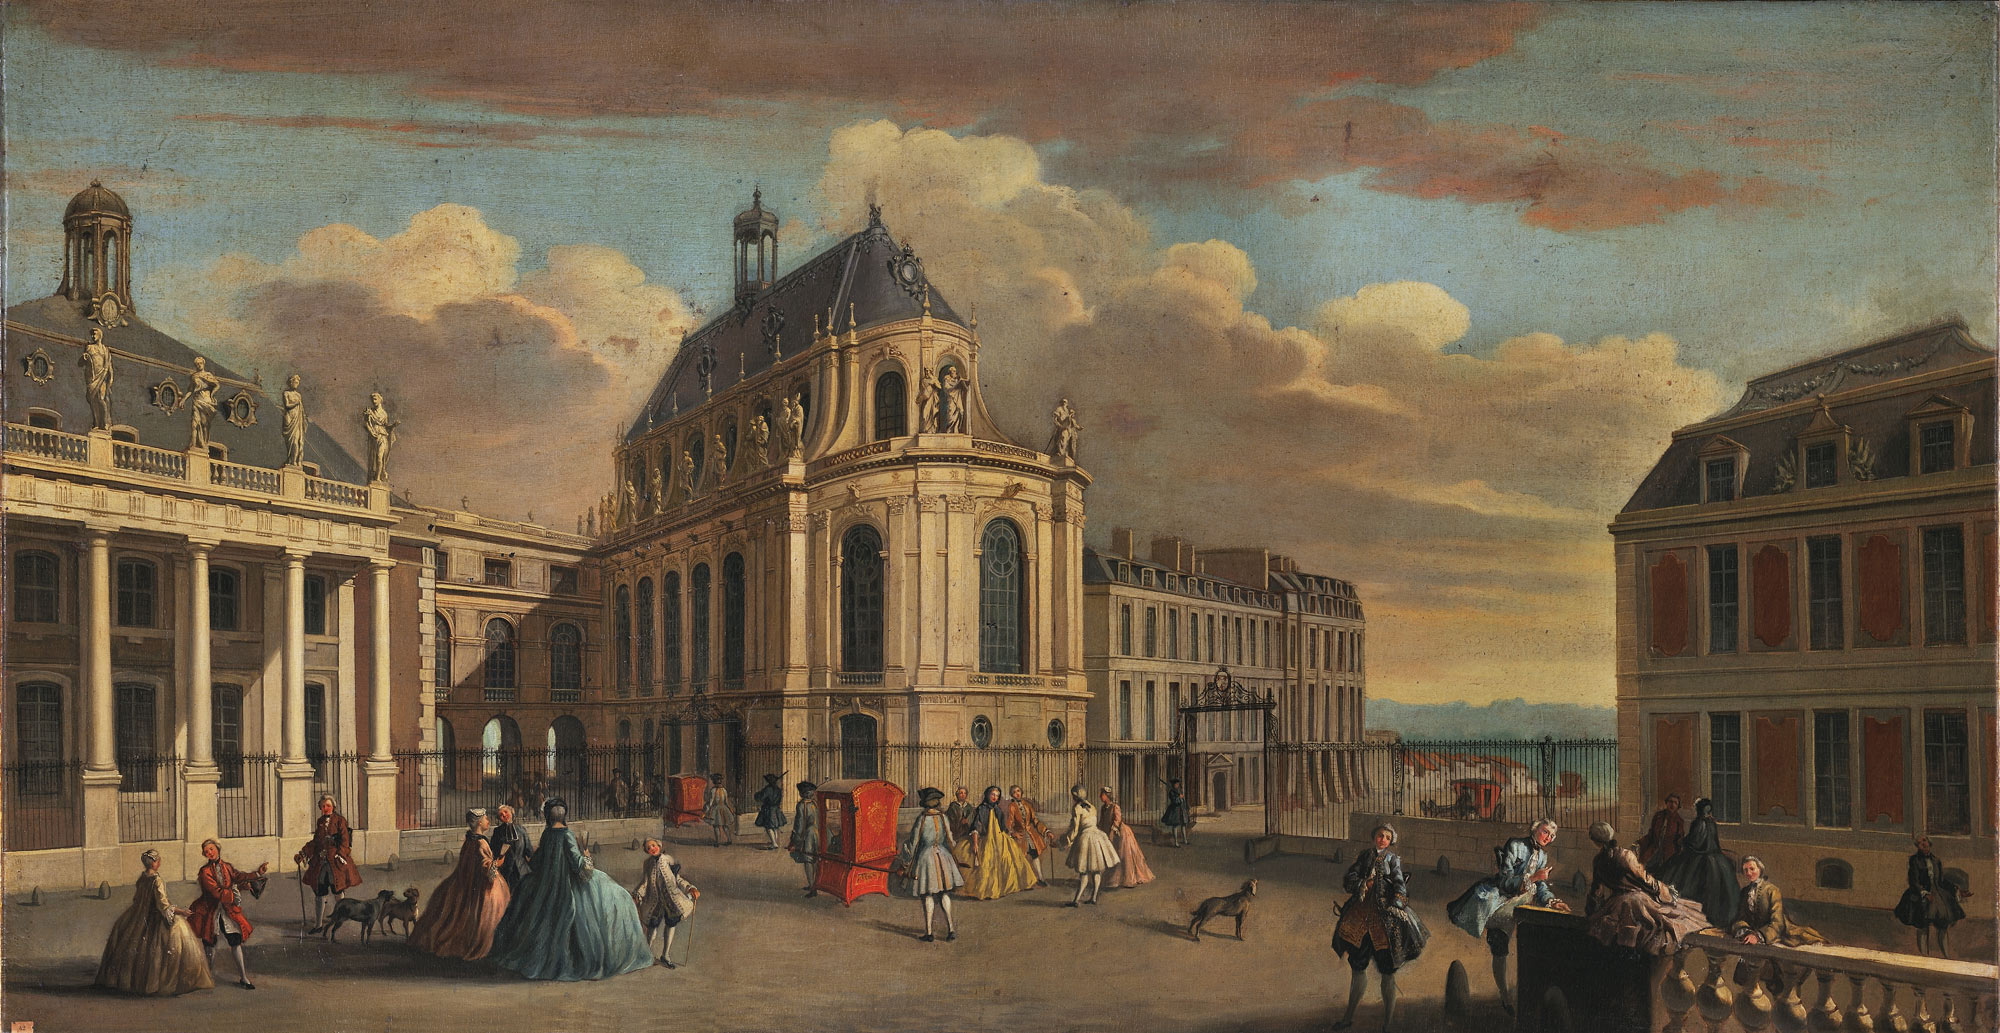 Начало 18 века в европе. Дворец Версаль 18 века в Париже. Версаль дворец Франция 18 век. Франция 17 век Версаль. Архитектура Франции 17 века Версаль.